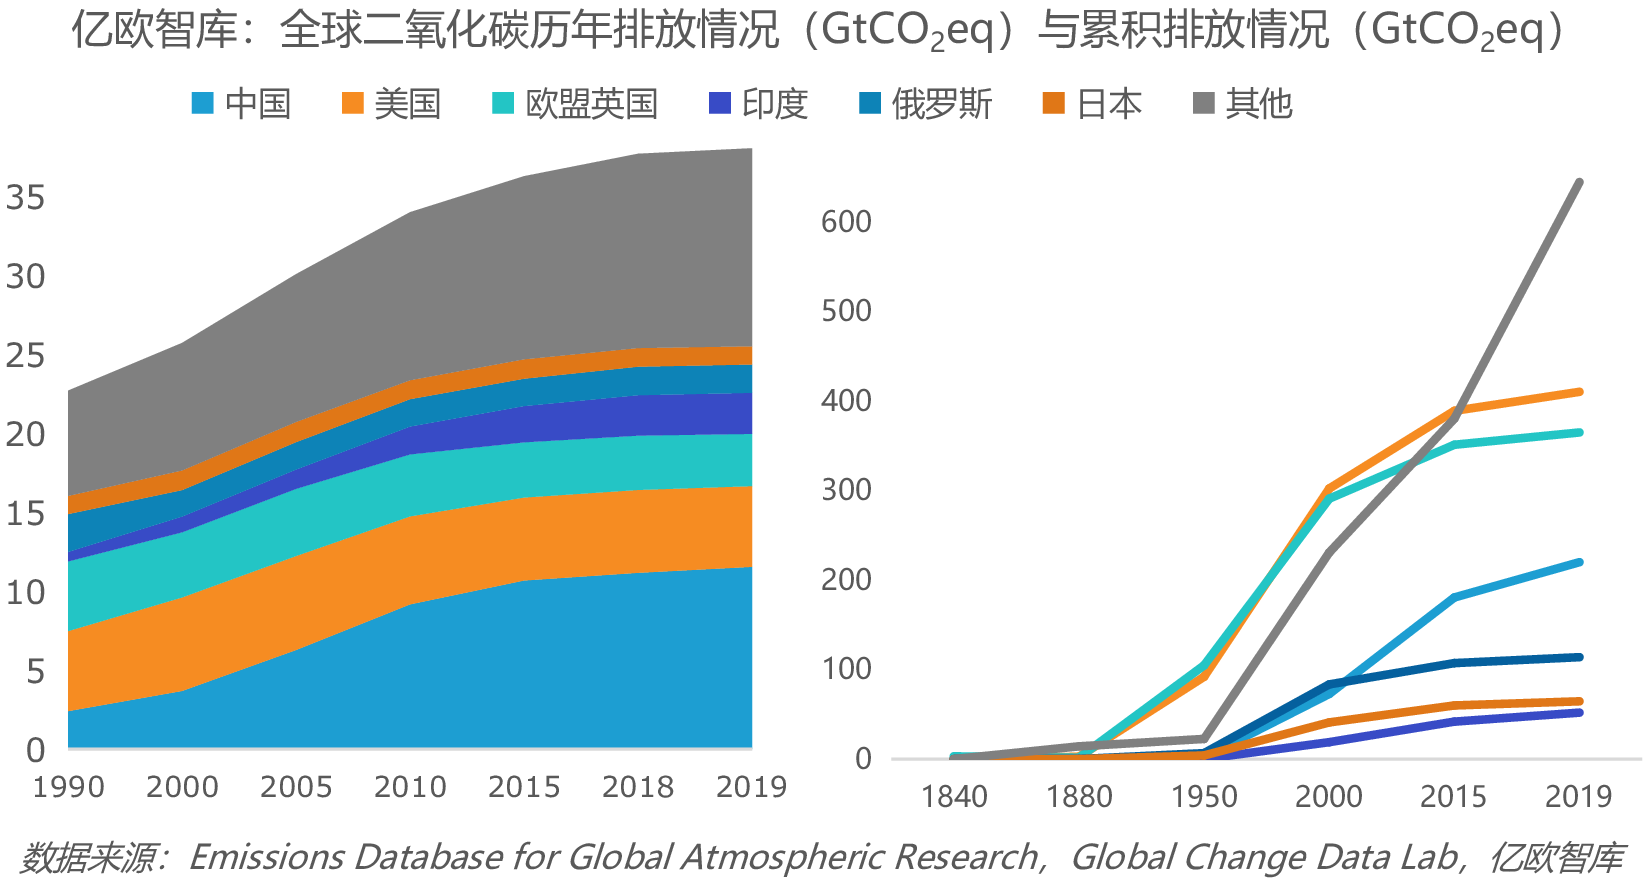 亿欧智库:全球二氧化碳历年排放情况(gtcoeq)与累积排放情况(gtco